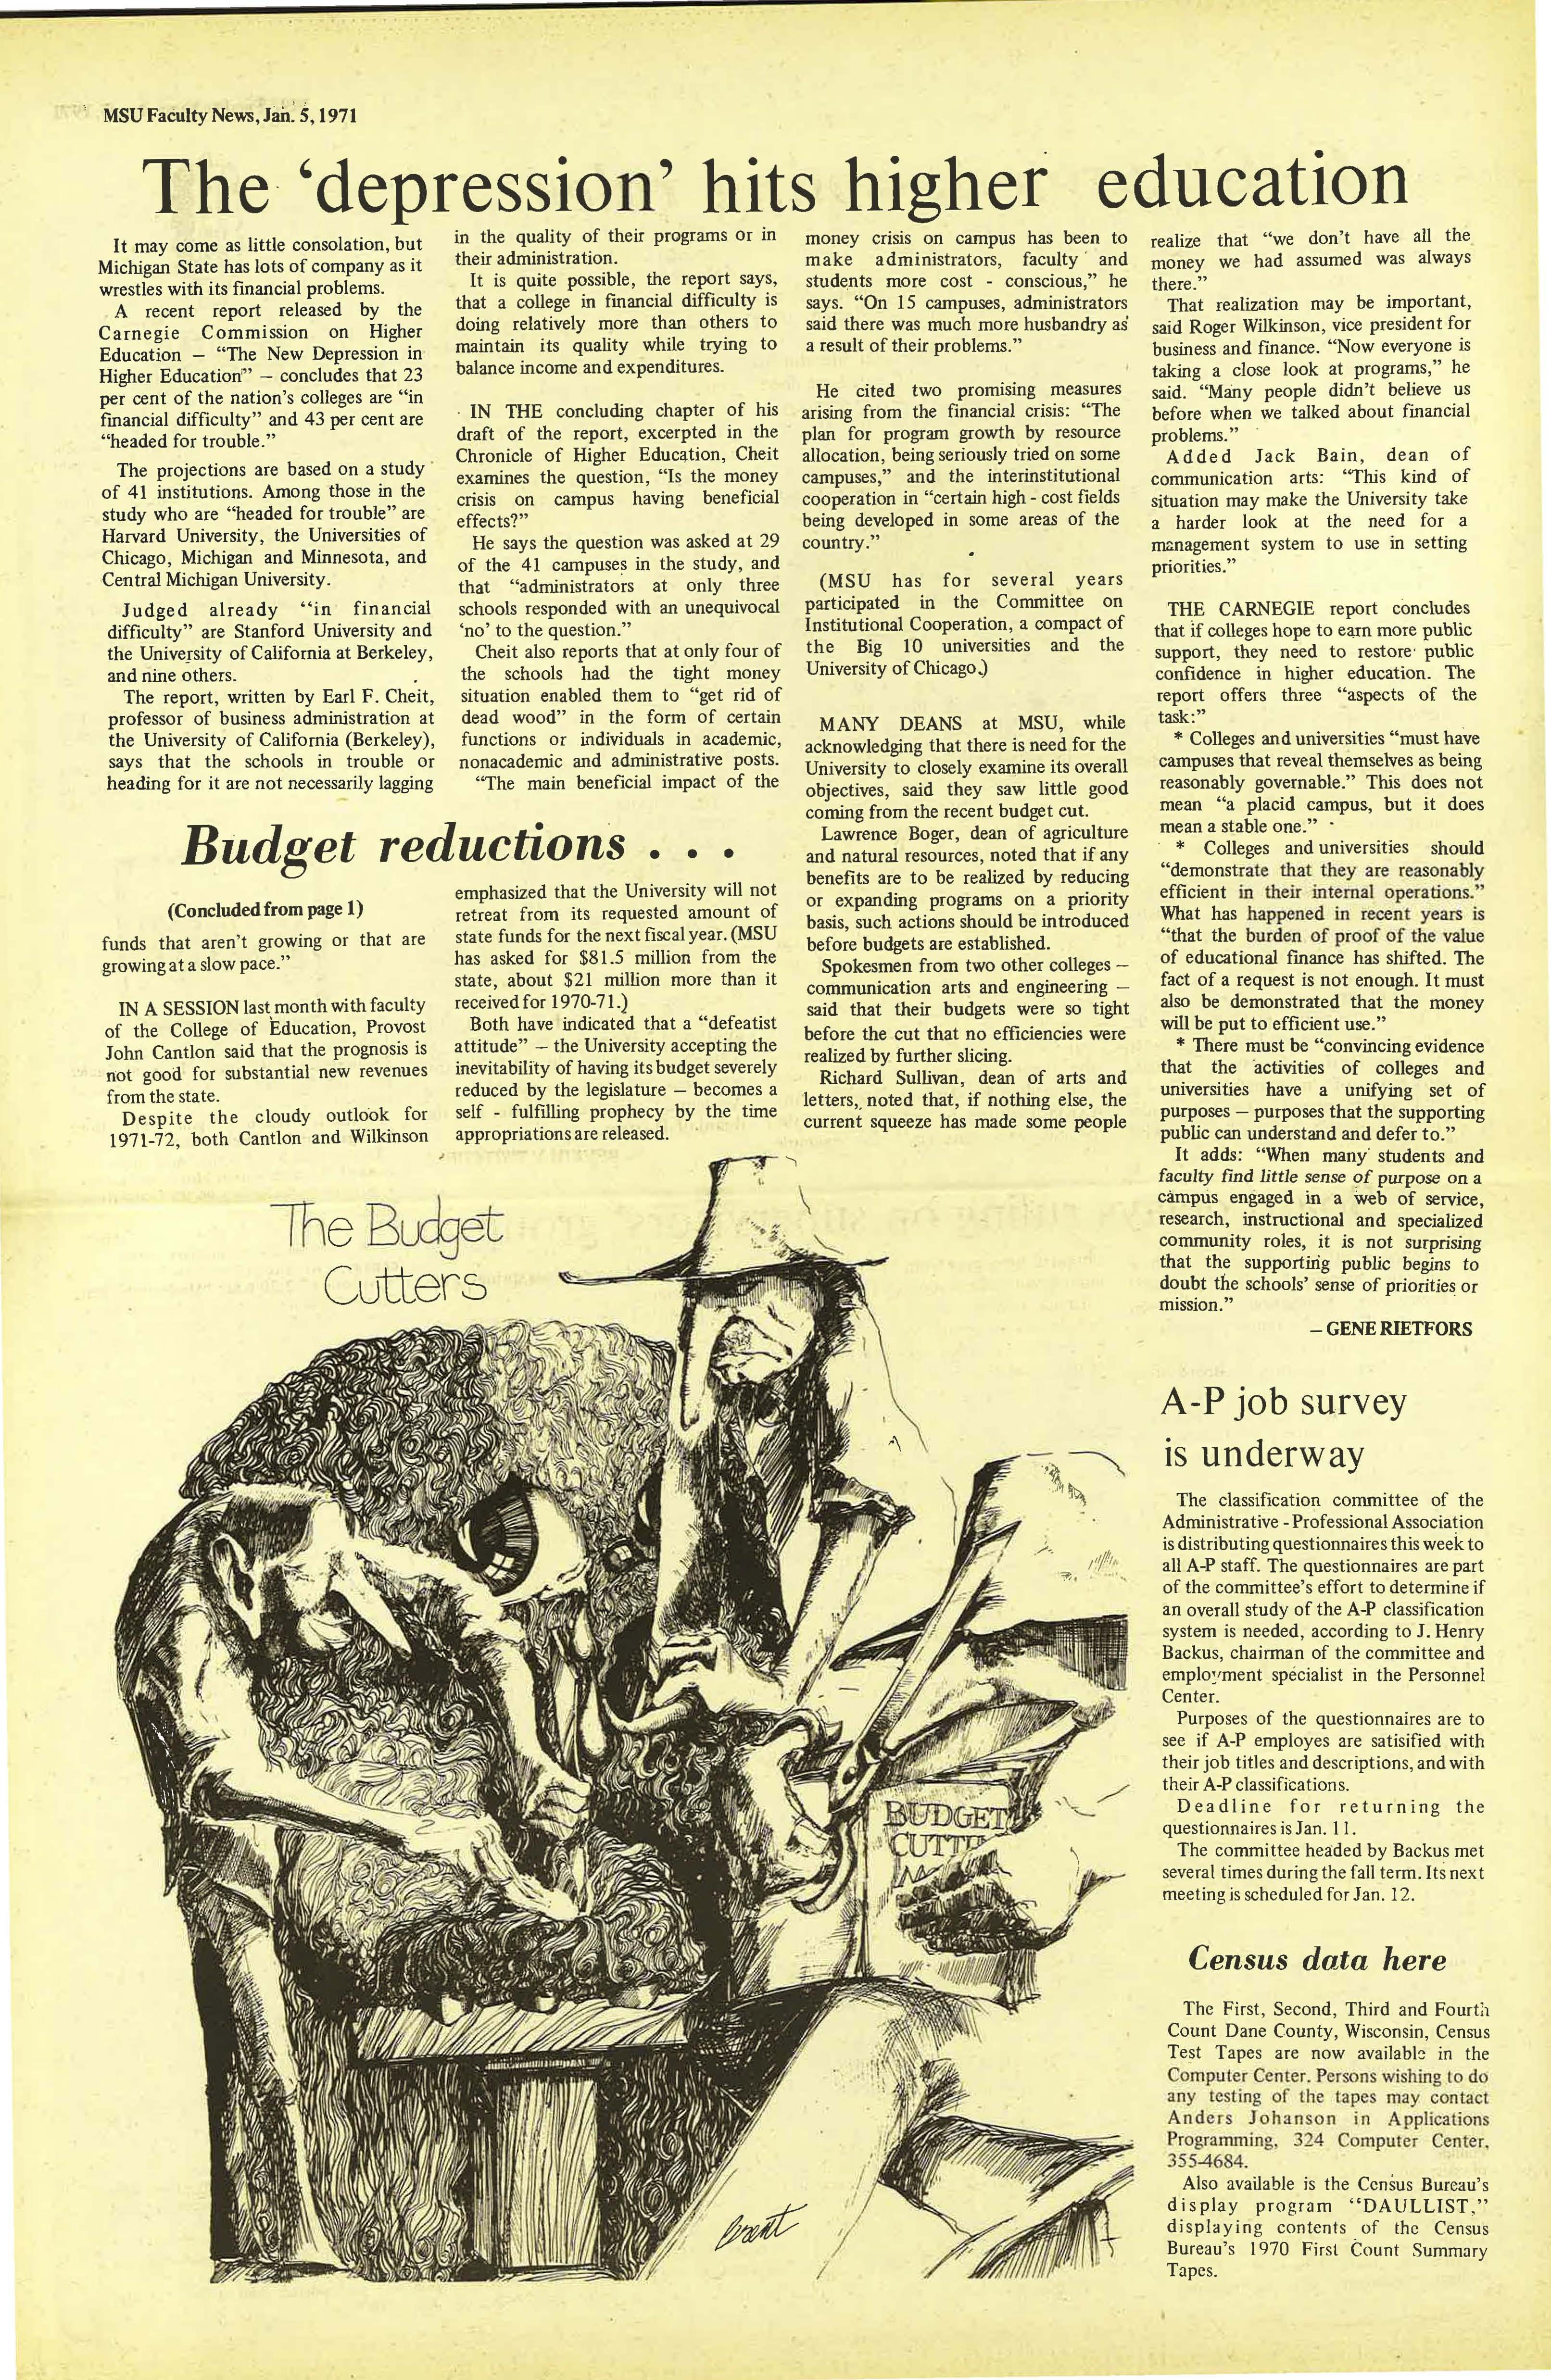 MSU News Bulletin, vol. 2, No. 21, April 1, 1971